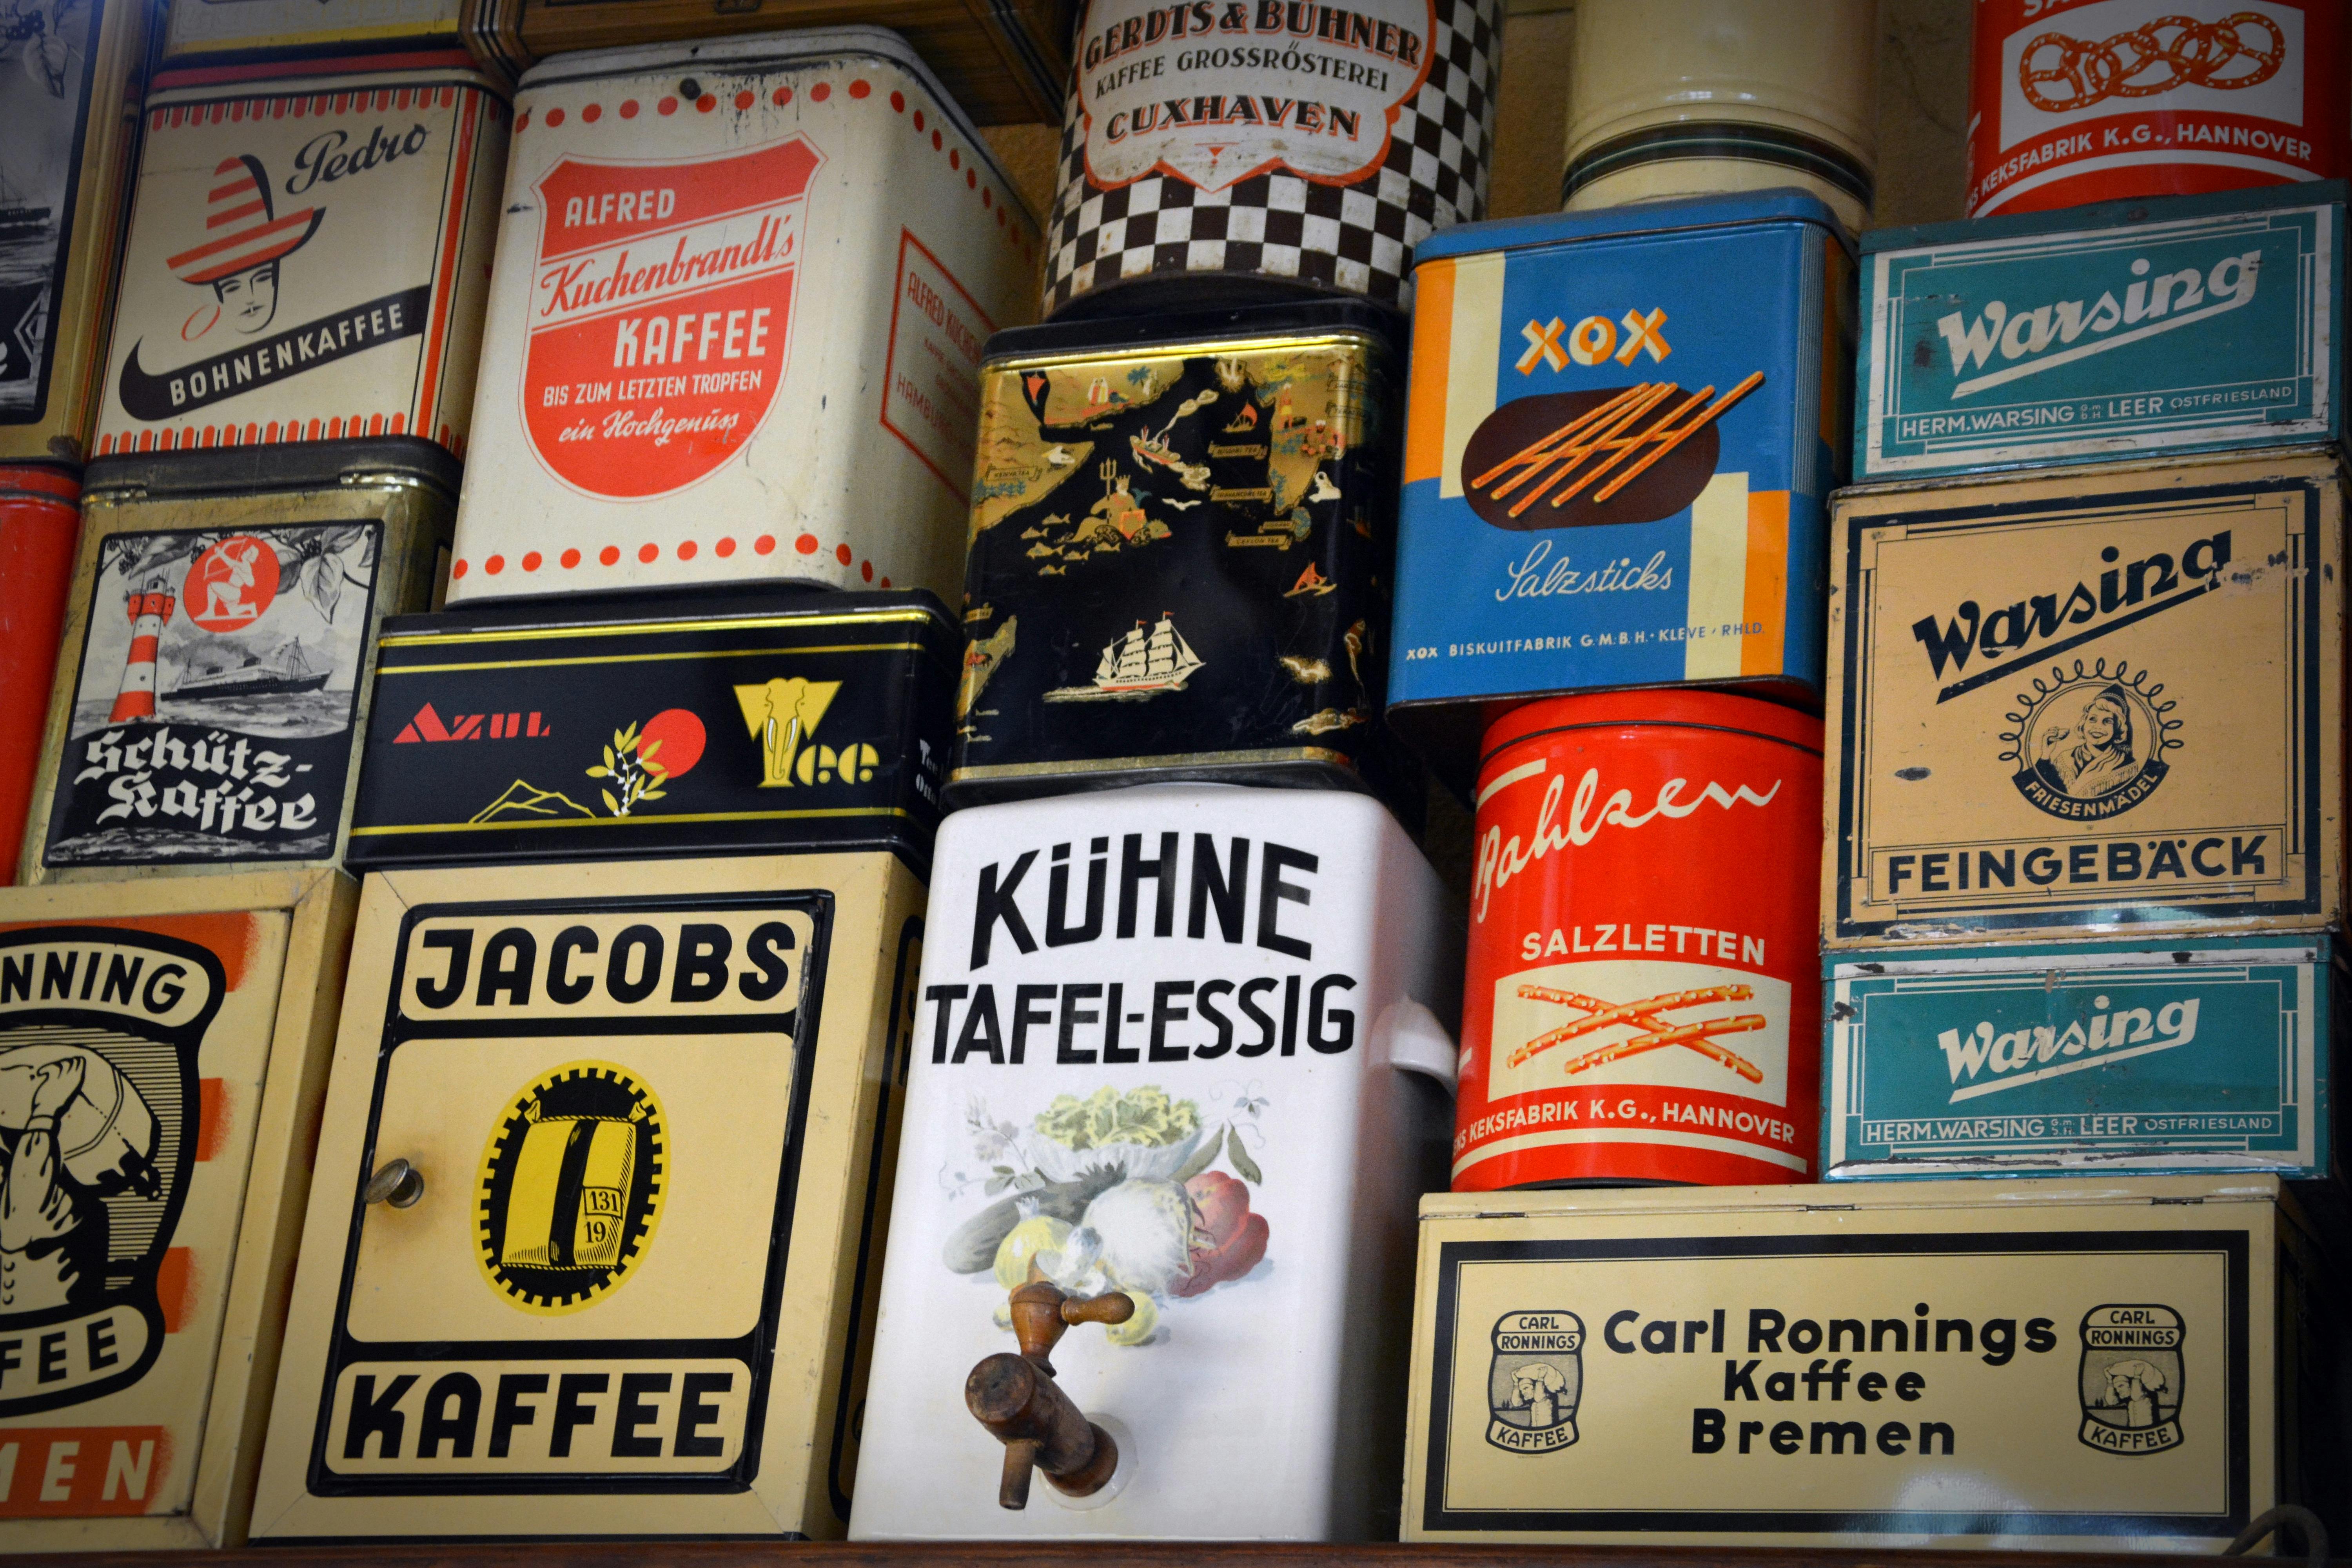 sale shelf old cans food 162927.jpeg?cs=srgb&dl=pexels pixabay 162927